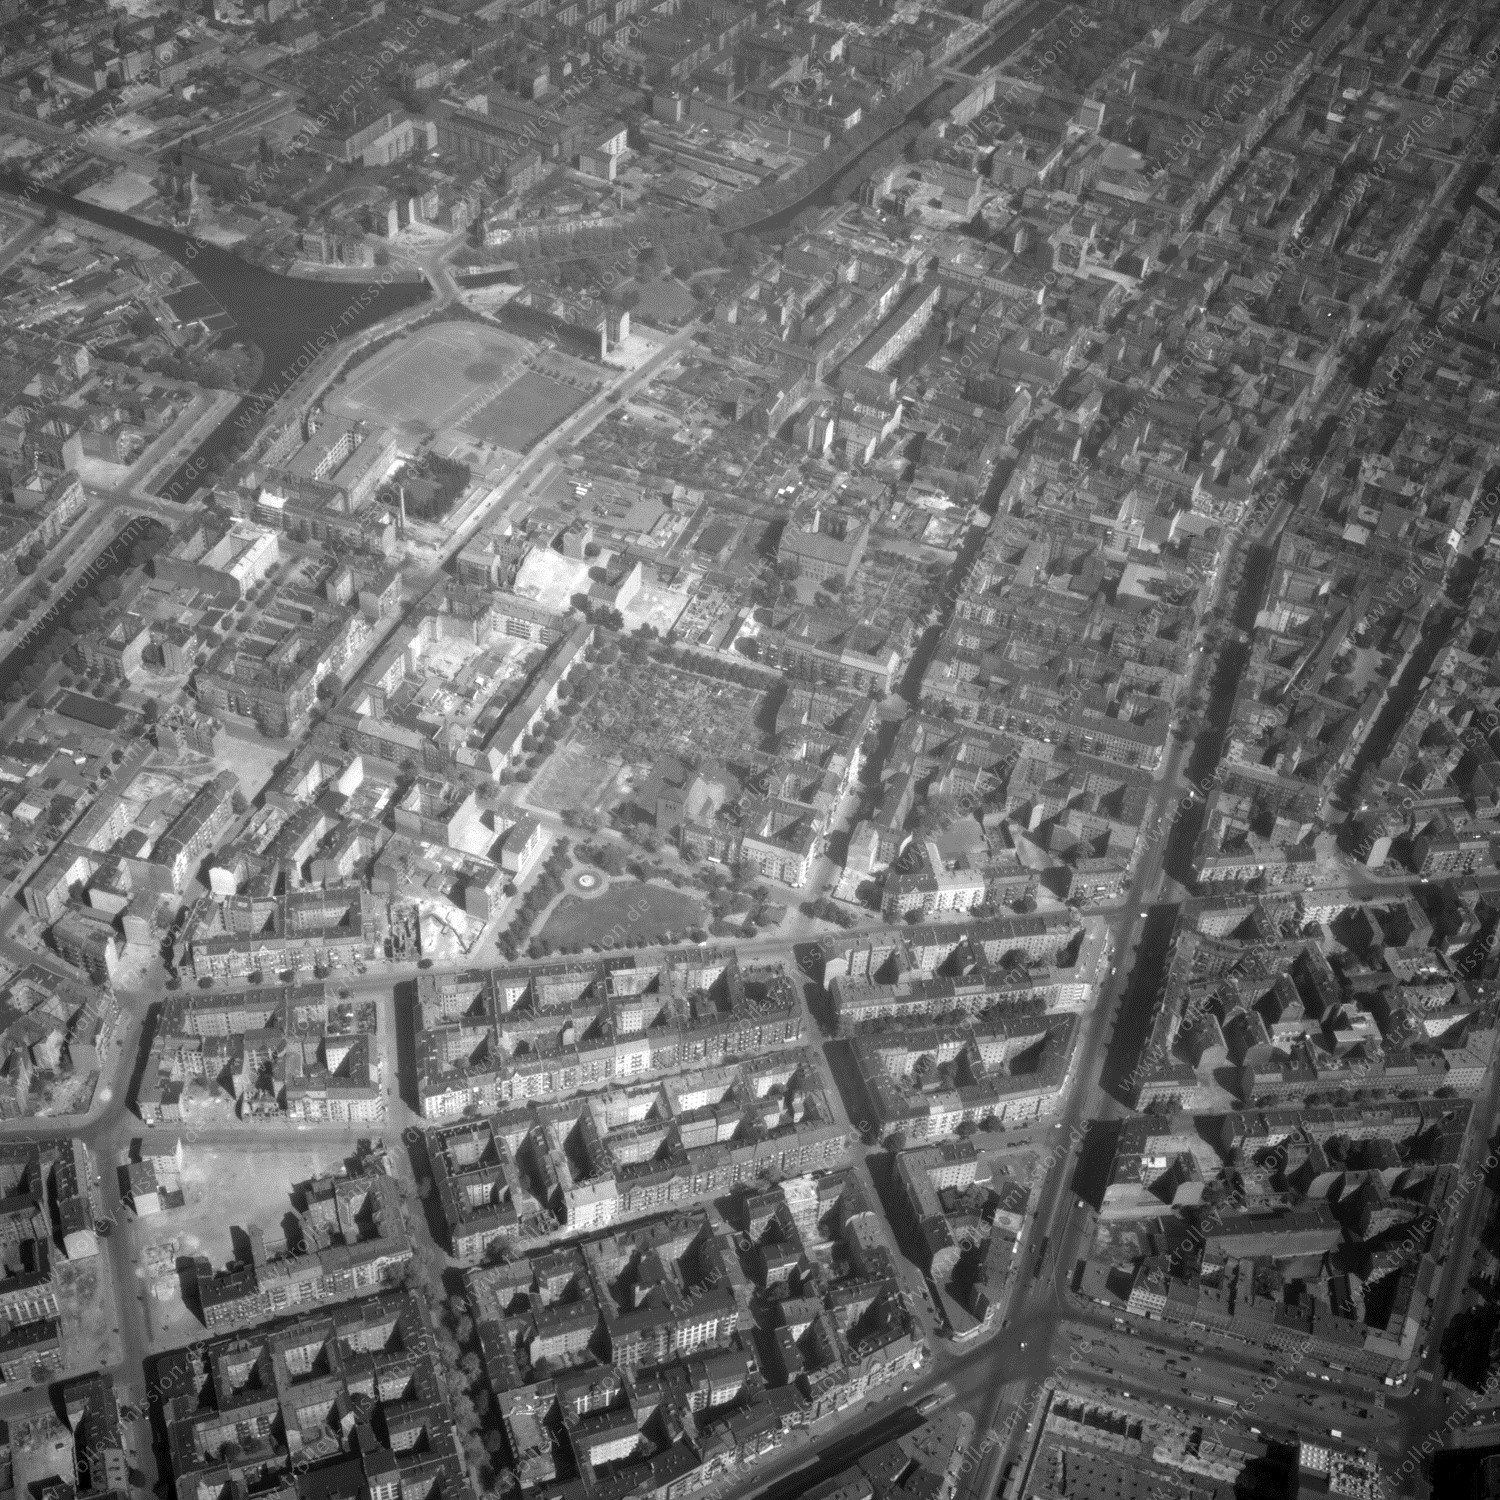 Alte Fotos und Luftbilder von Berlin - Luftbildaufnahme Nr. 03 - Historische Luftaufnahmen von West-Berlin aus dem Jahr 1954 - Flugstrecke Mike